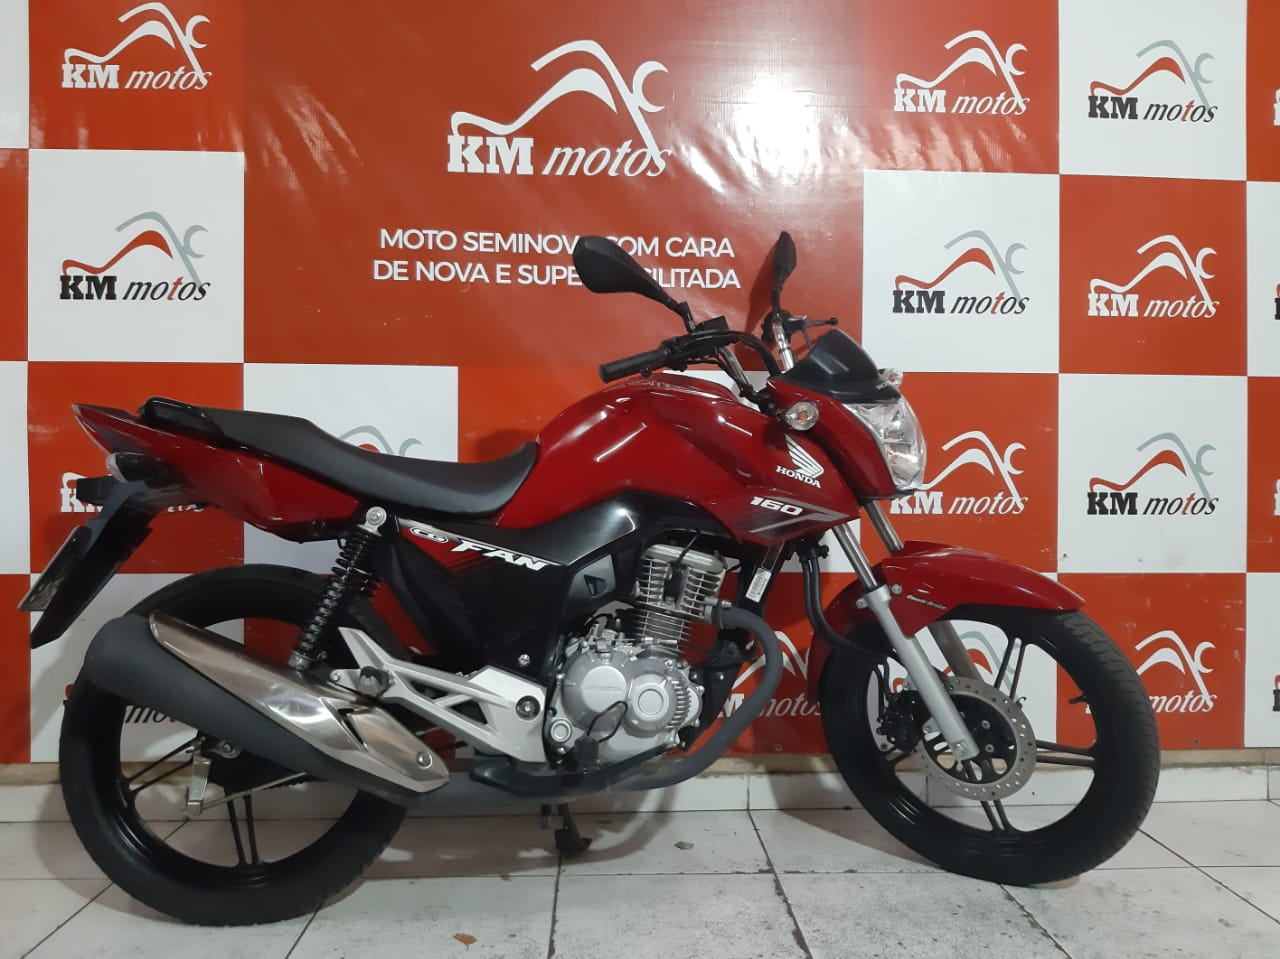 Honda Cg 160 Fan Flex 2018 Km Motos Sua Loja De Motos Semi Novas 2138